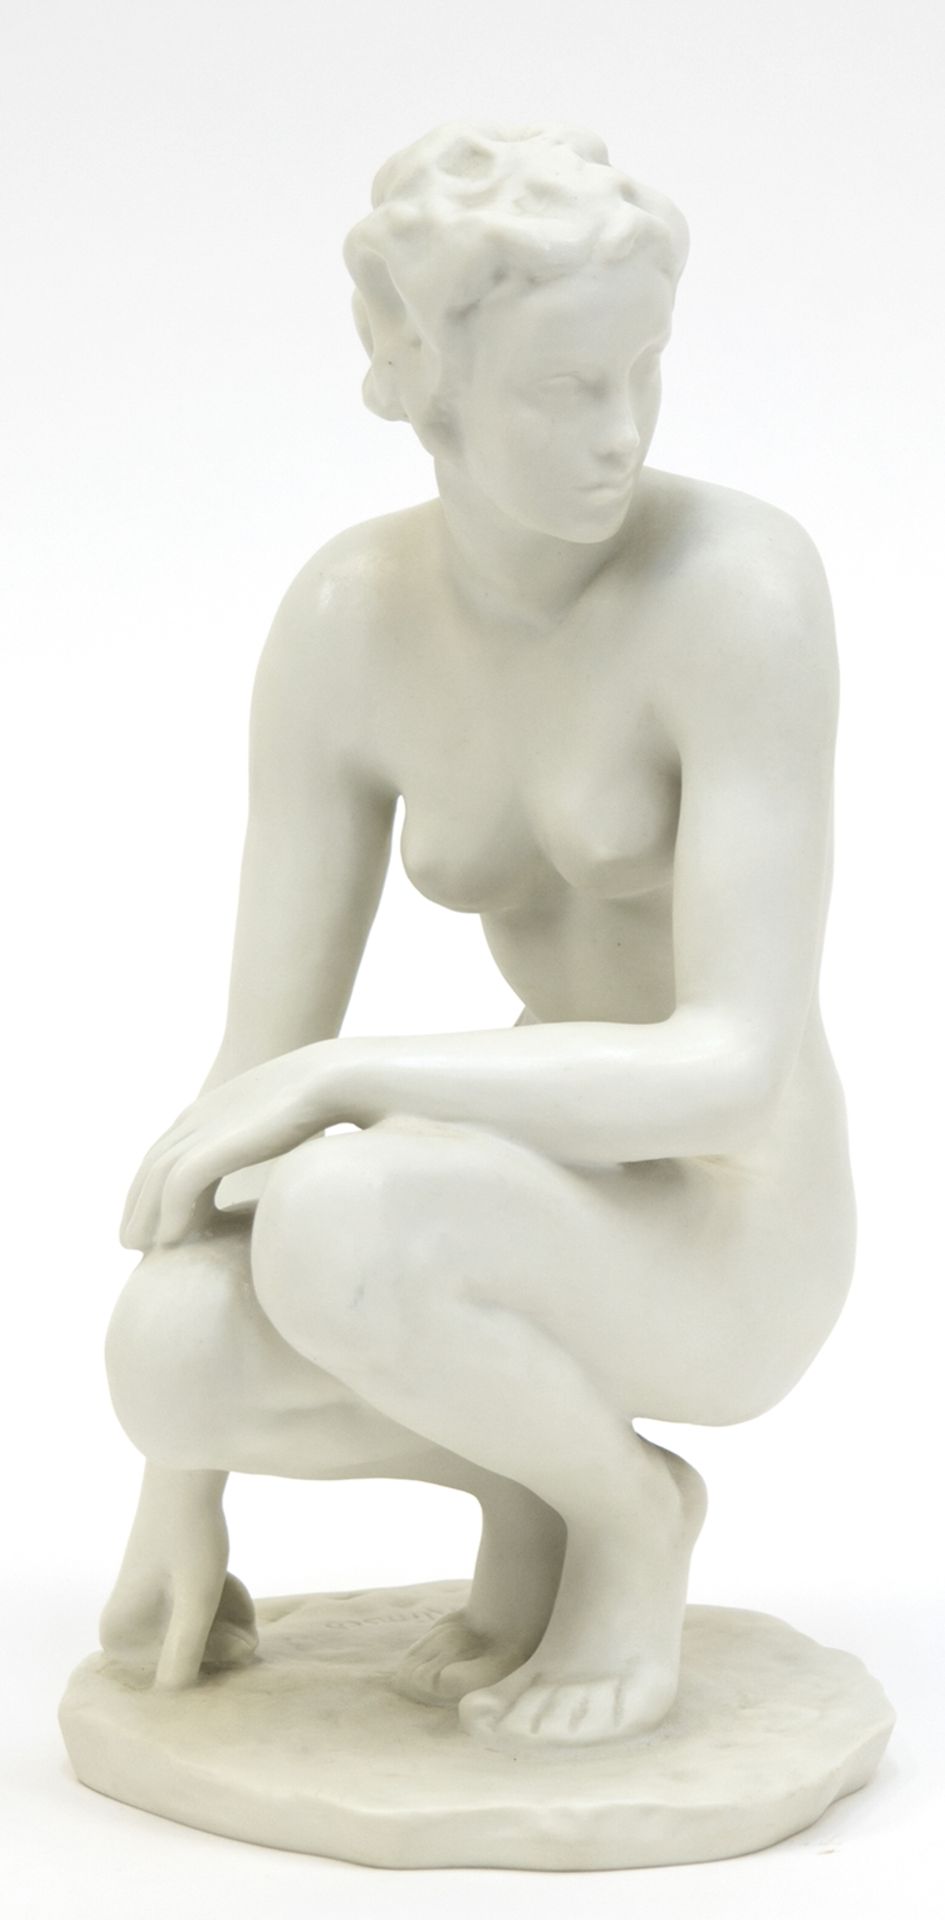 Porzellanfigur "Die Hockende", Rosenthal, Bisquitporzellan, Entwurf Fritz Klimsch, auf der Plinthe 